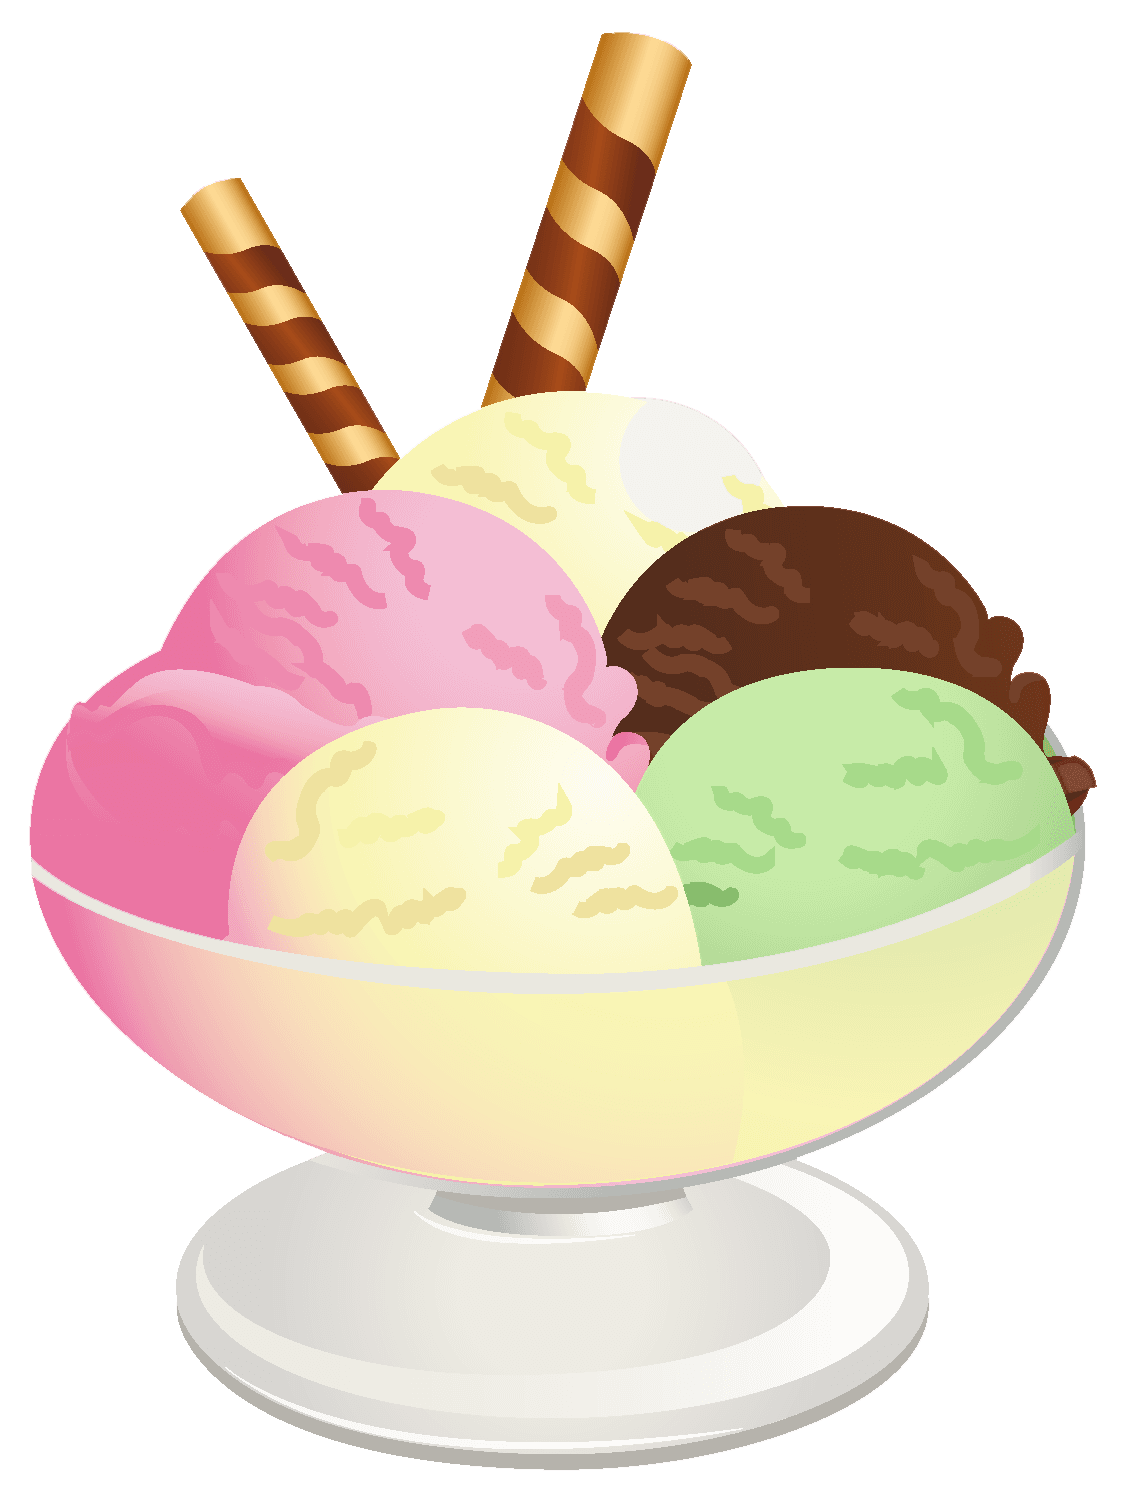 可愛卡通甜筒冰淇淋PSD圖案素材免費下載，圖片尺寸2048 × 2048px - Lovepik